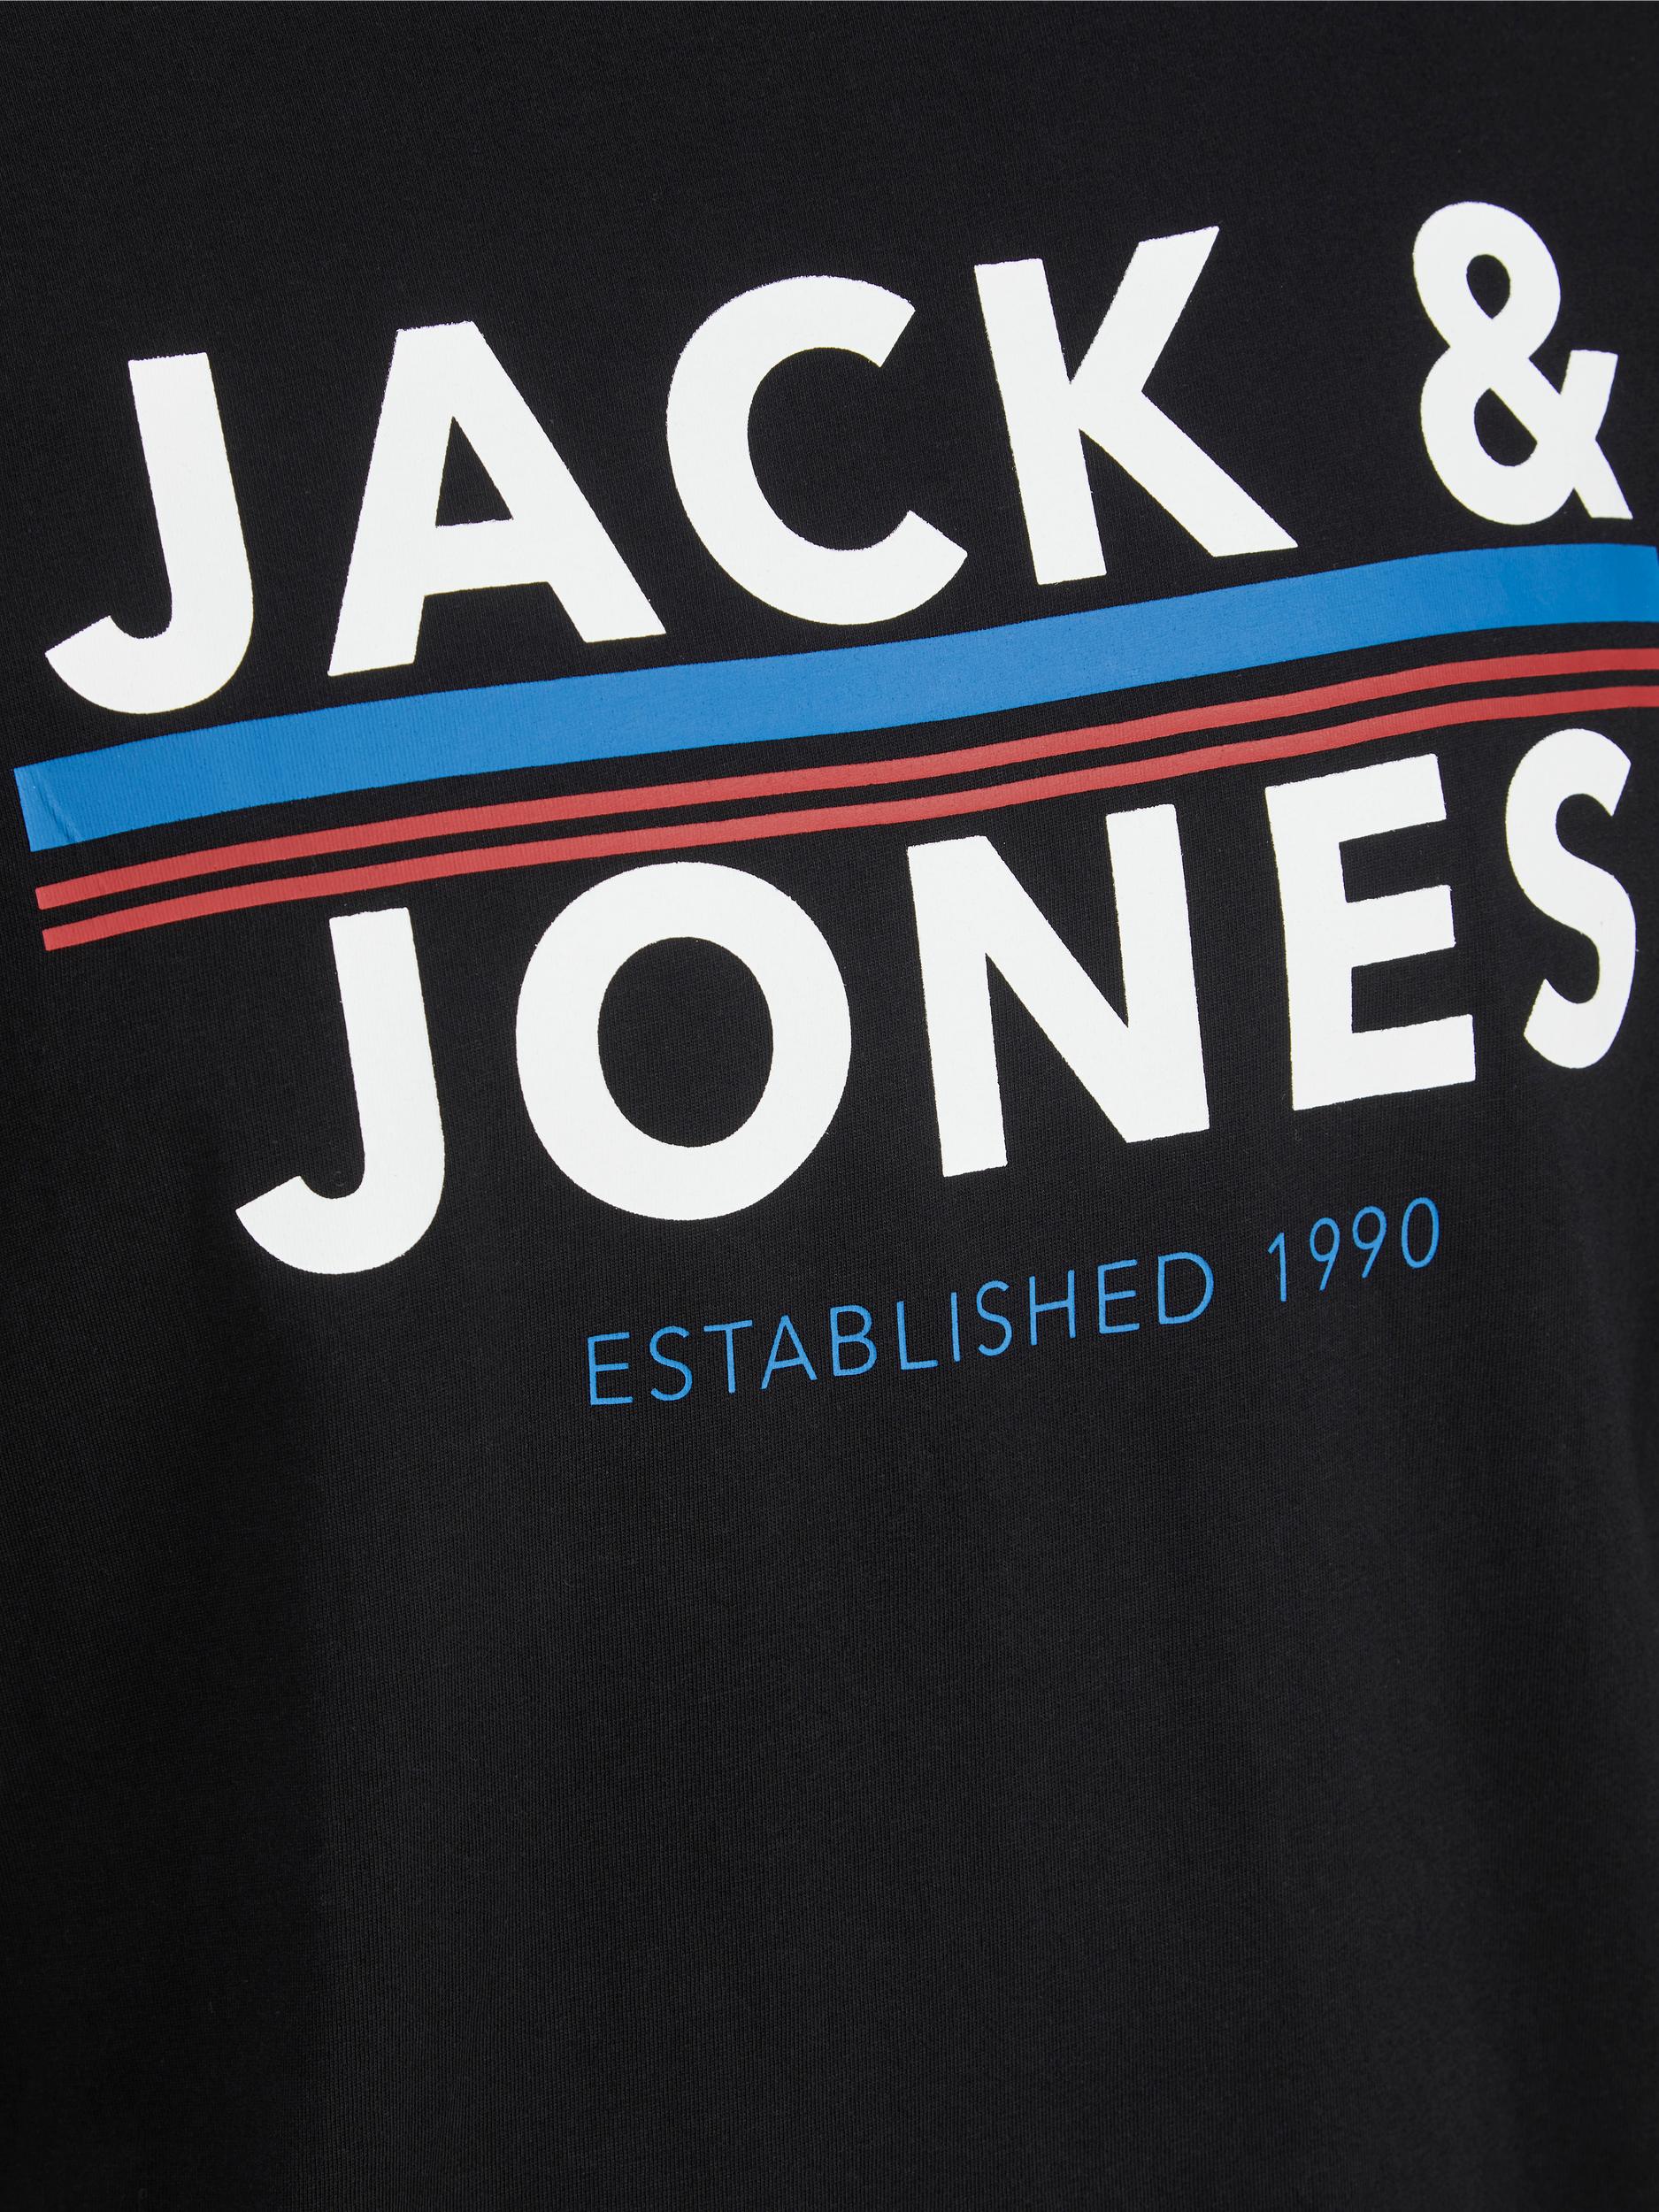 Mężczyźni Odzież JACK & JONES Koszulka Ron w kolorze Czarnym 